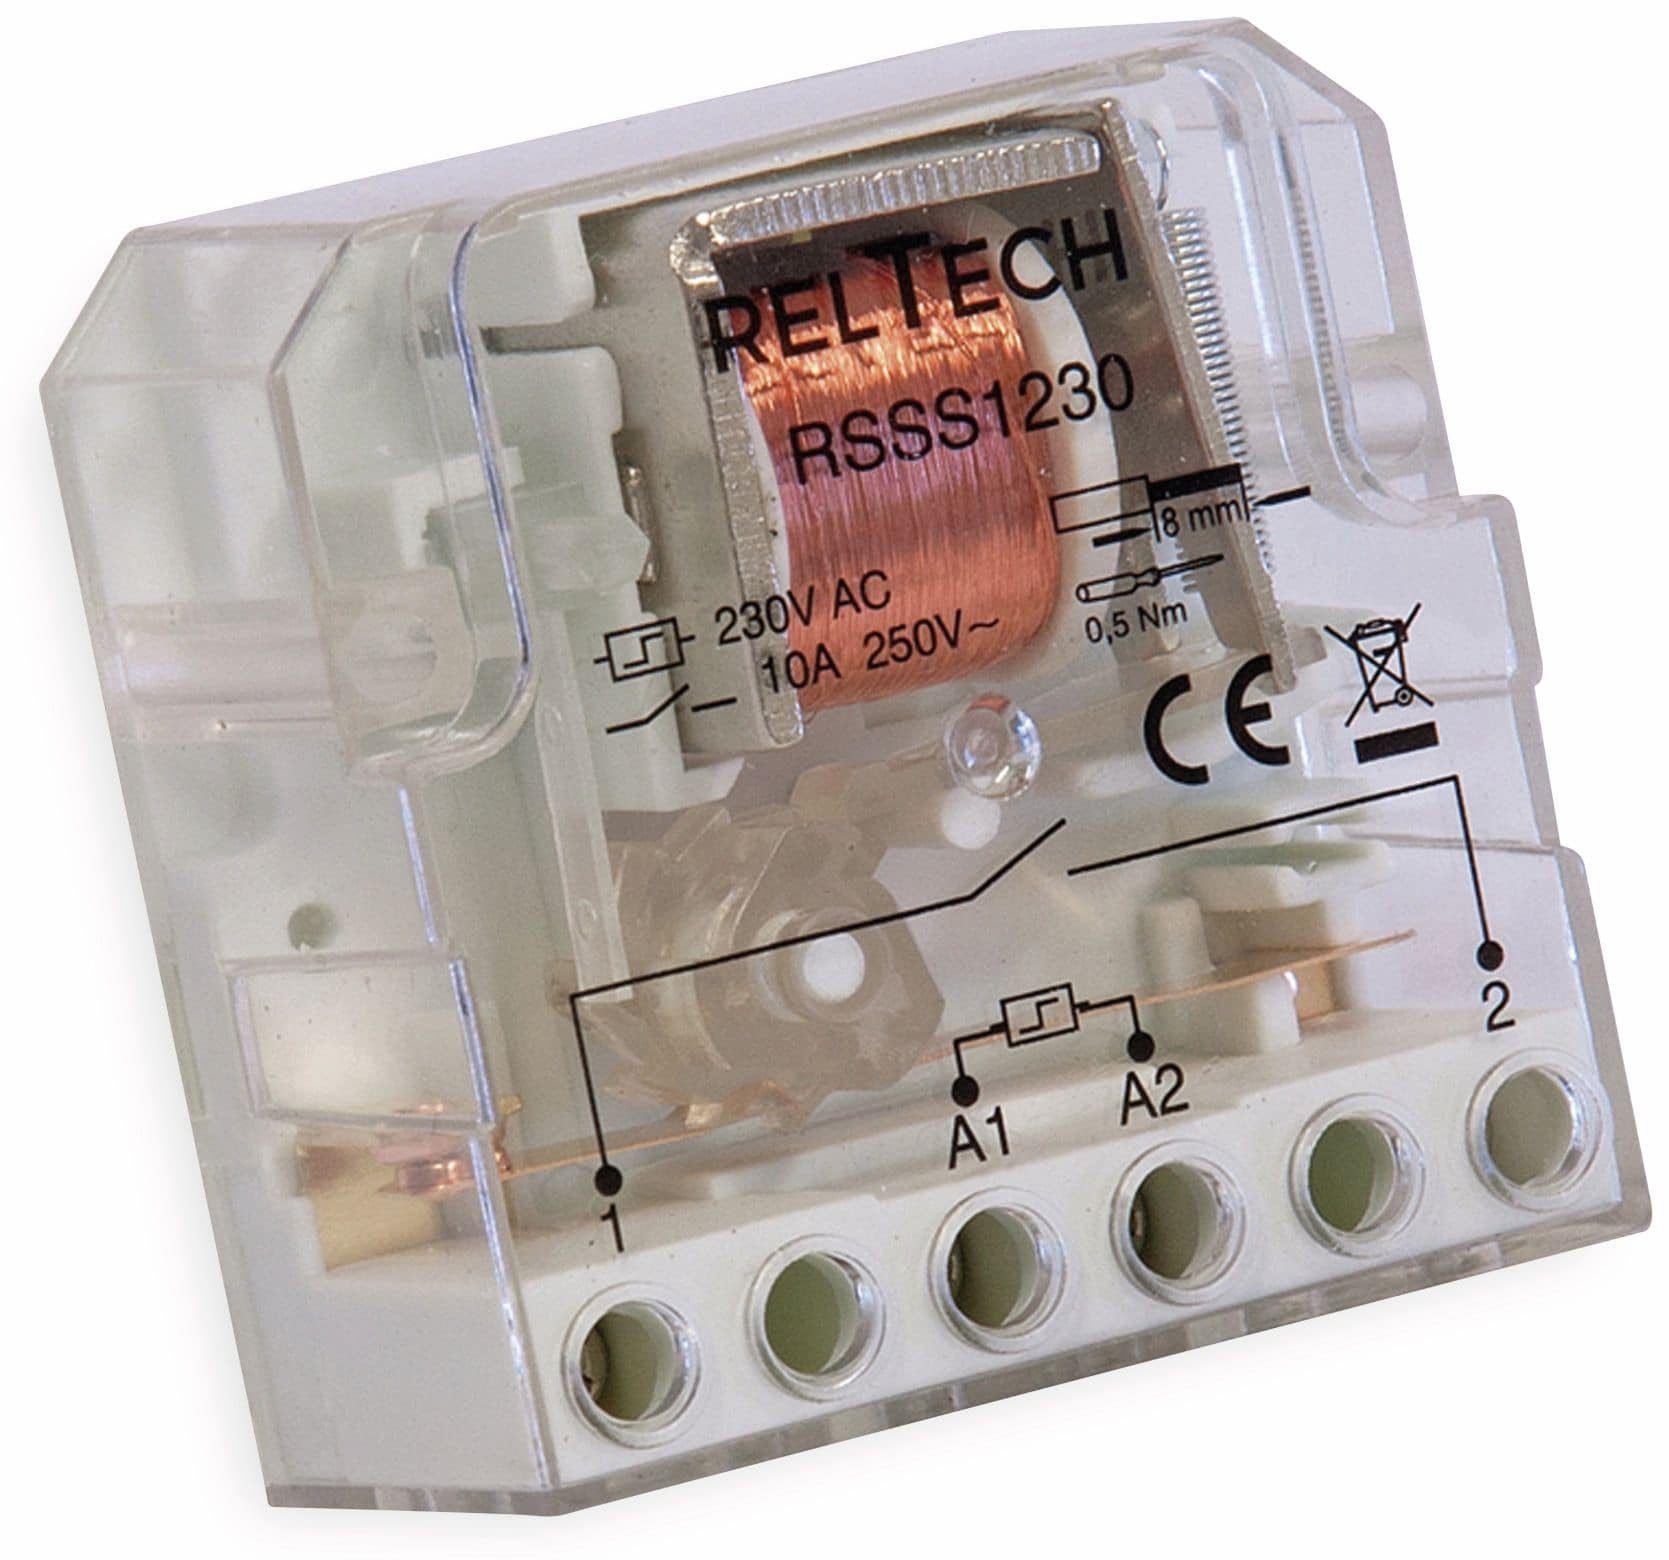 Reltech Verteilerbox RELTECH Stromstoss-Schalter RSSS1230, 10A/230V, 1